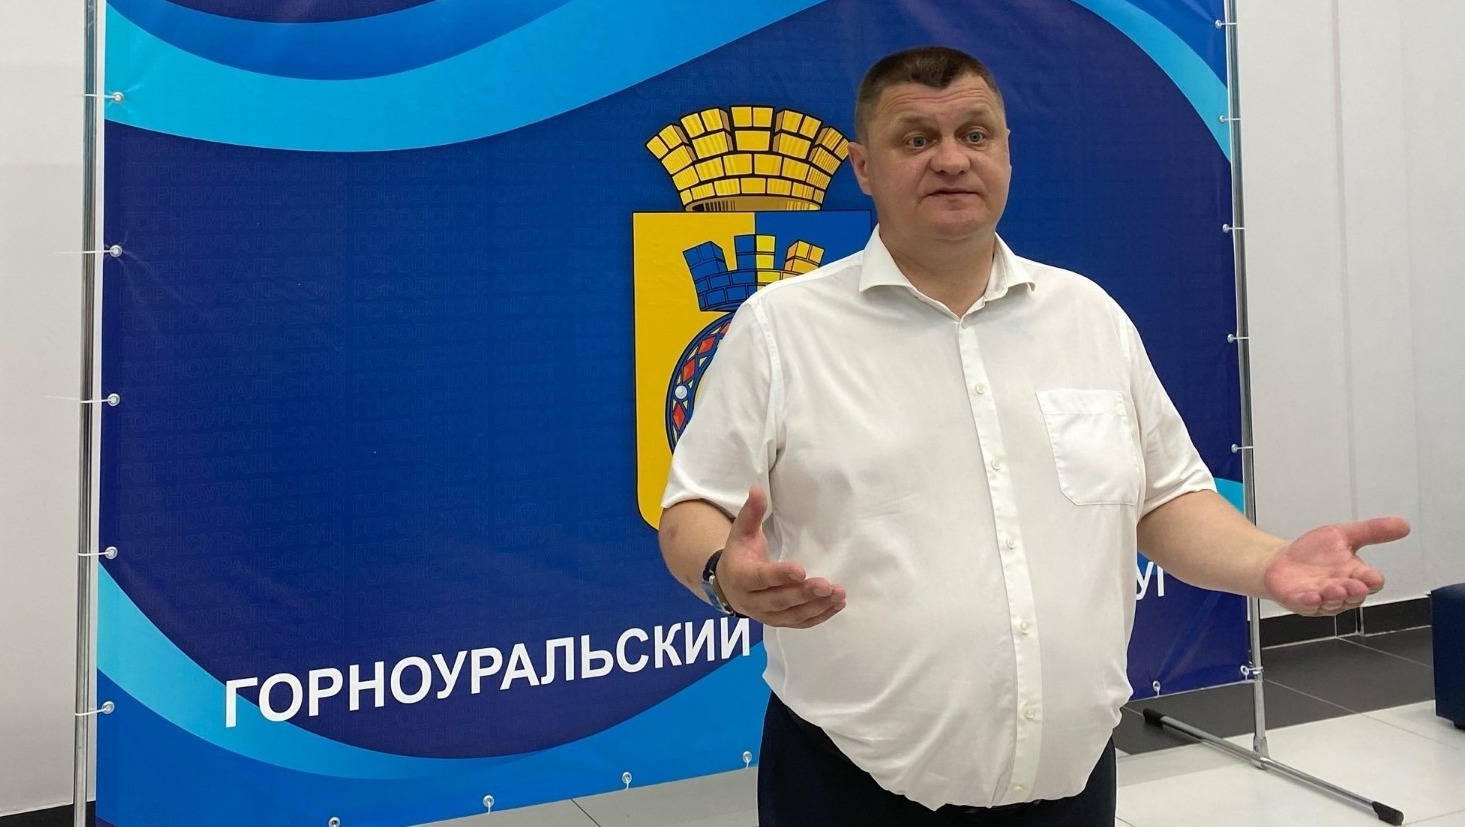 «Единая Россия» приостановит членство главы ГГО Летникова из-за уголовного дела